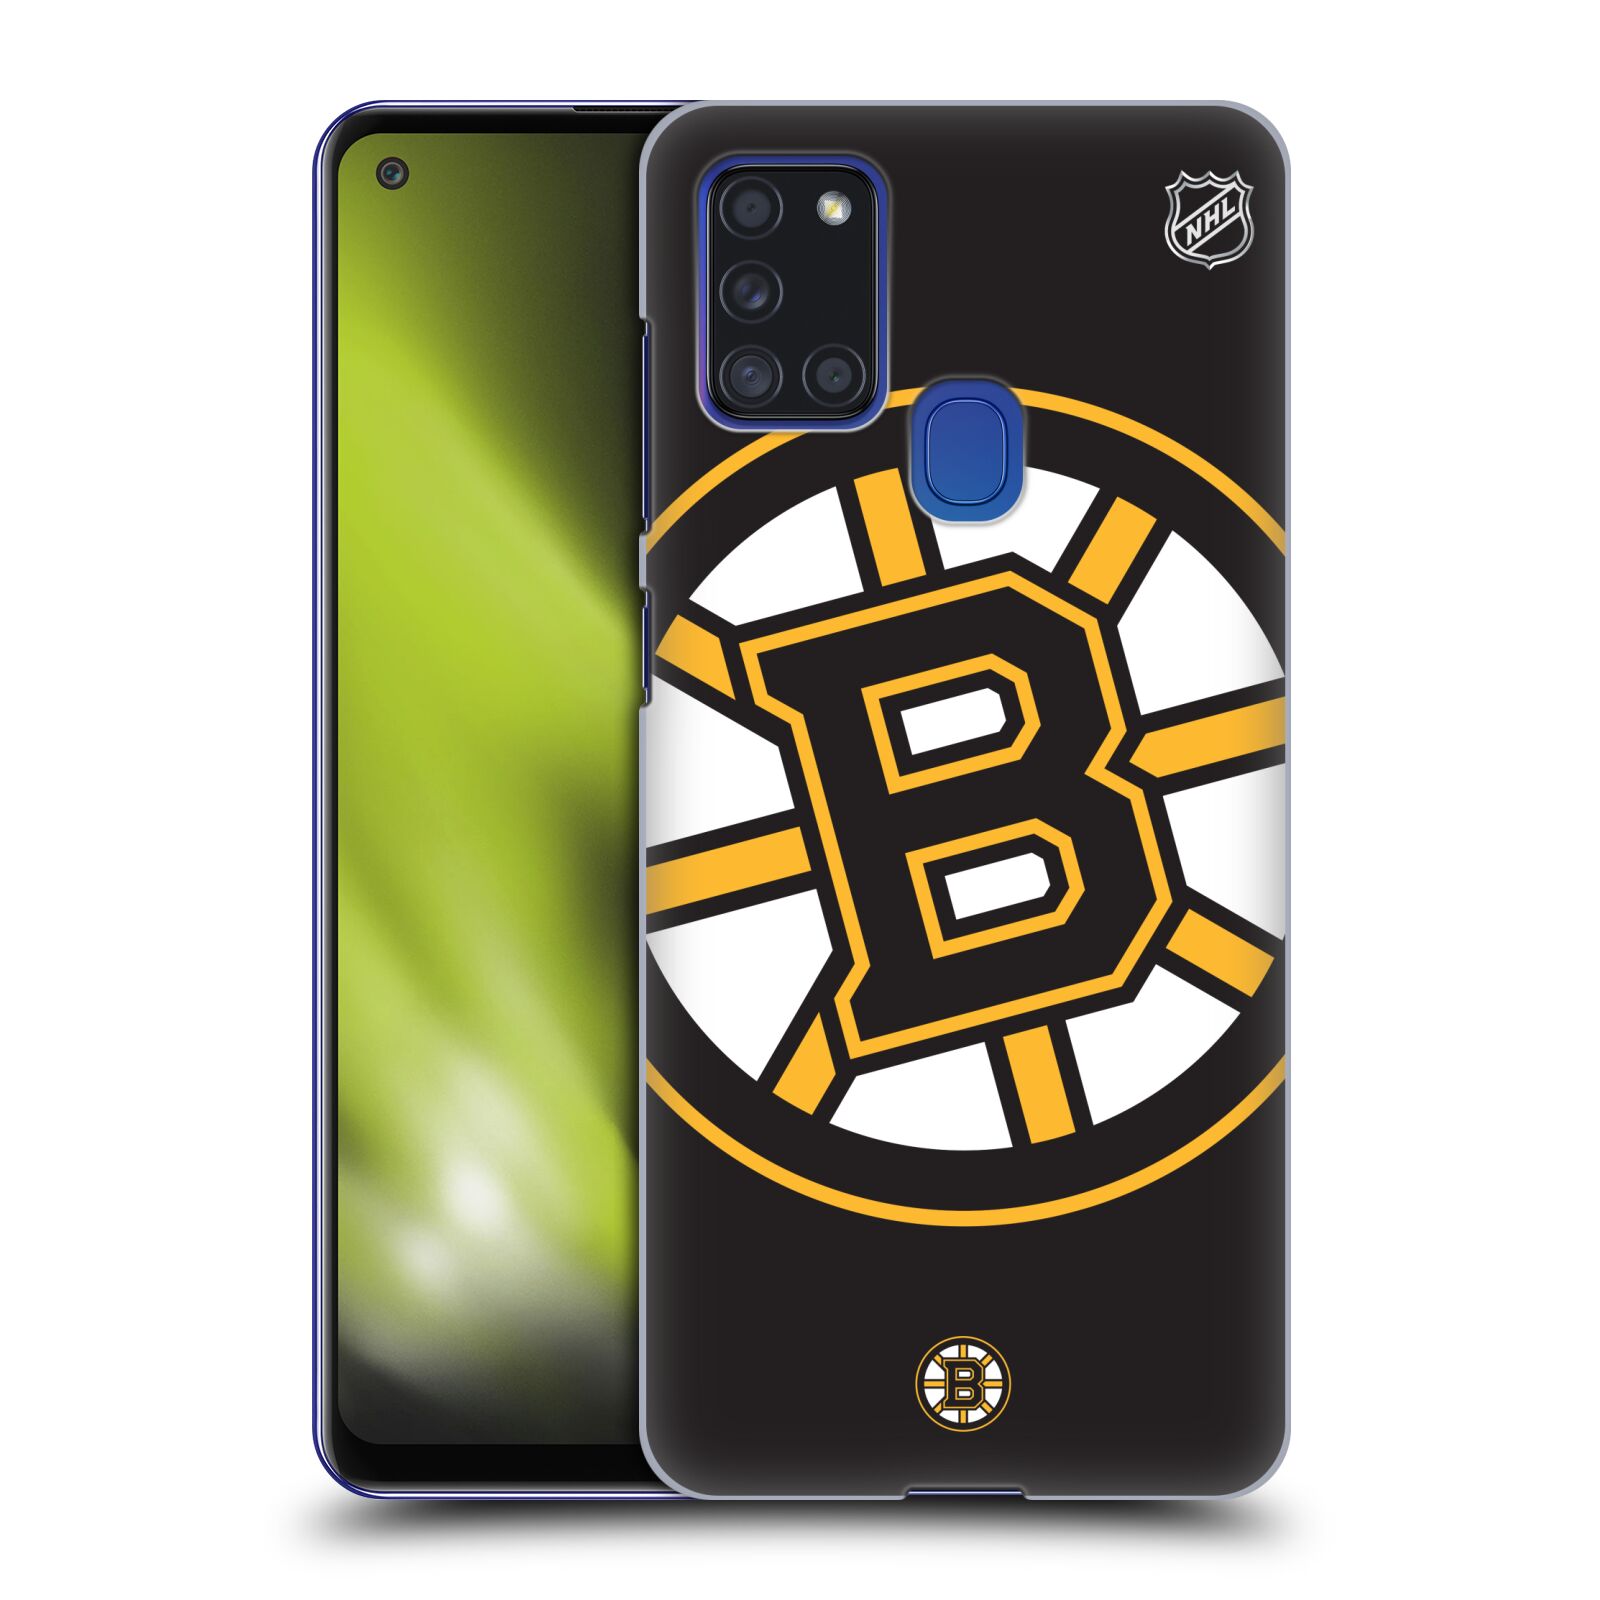 Pouzdro na mobil Samsung Galaxy A21s - HEAD CASE - Hokej NHL - Boston Bruins - velký znak